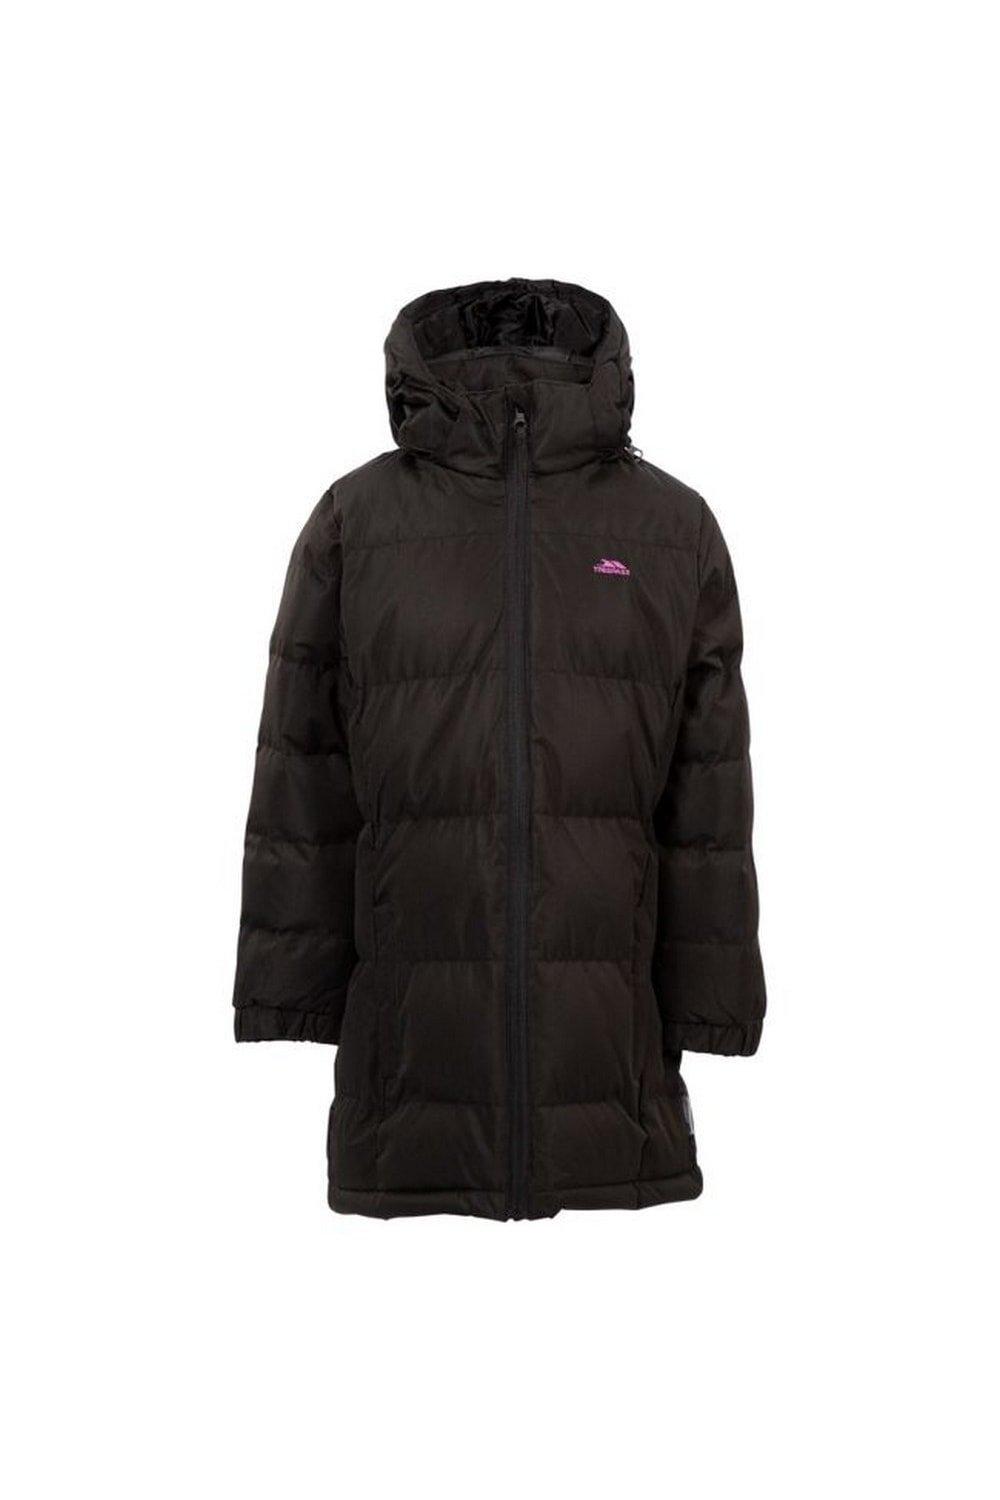 Стеганое пальто Tiffy Trespass, черный куртка утепленная для девочек northland розовый